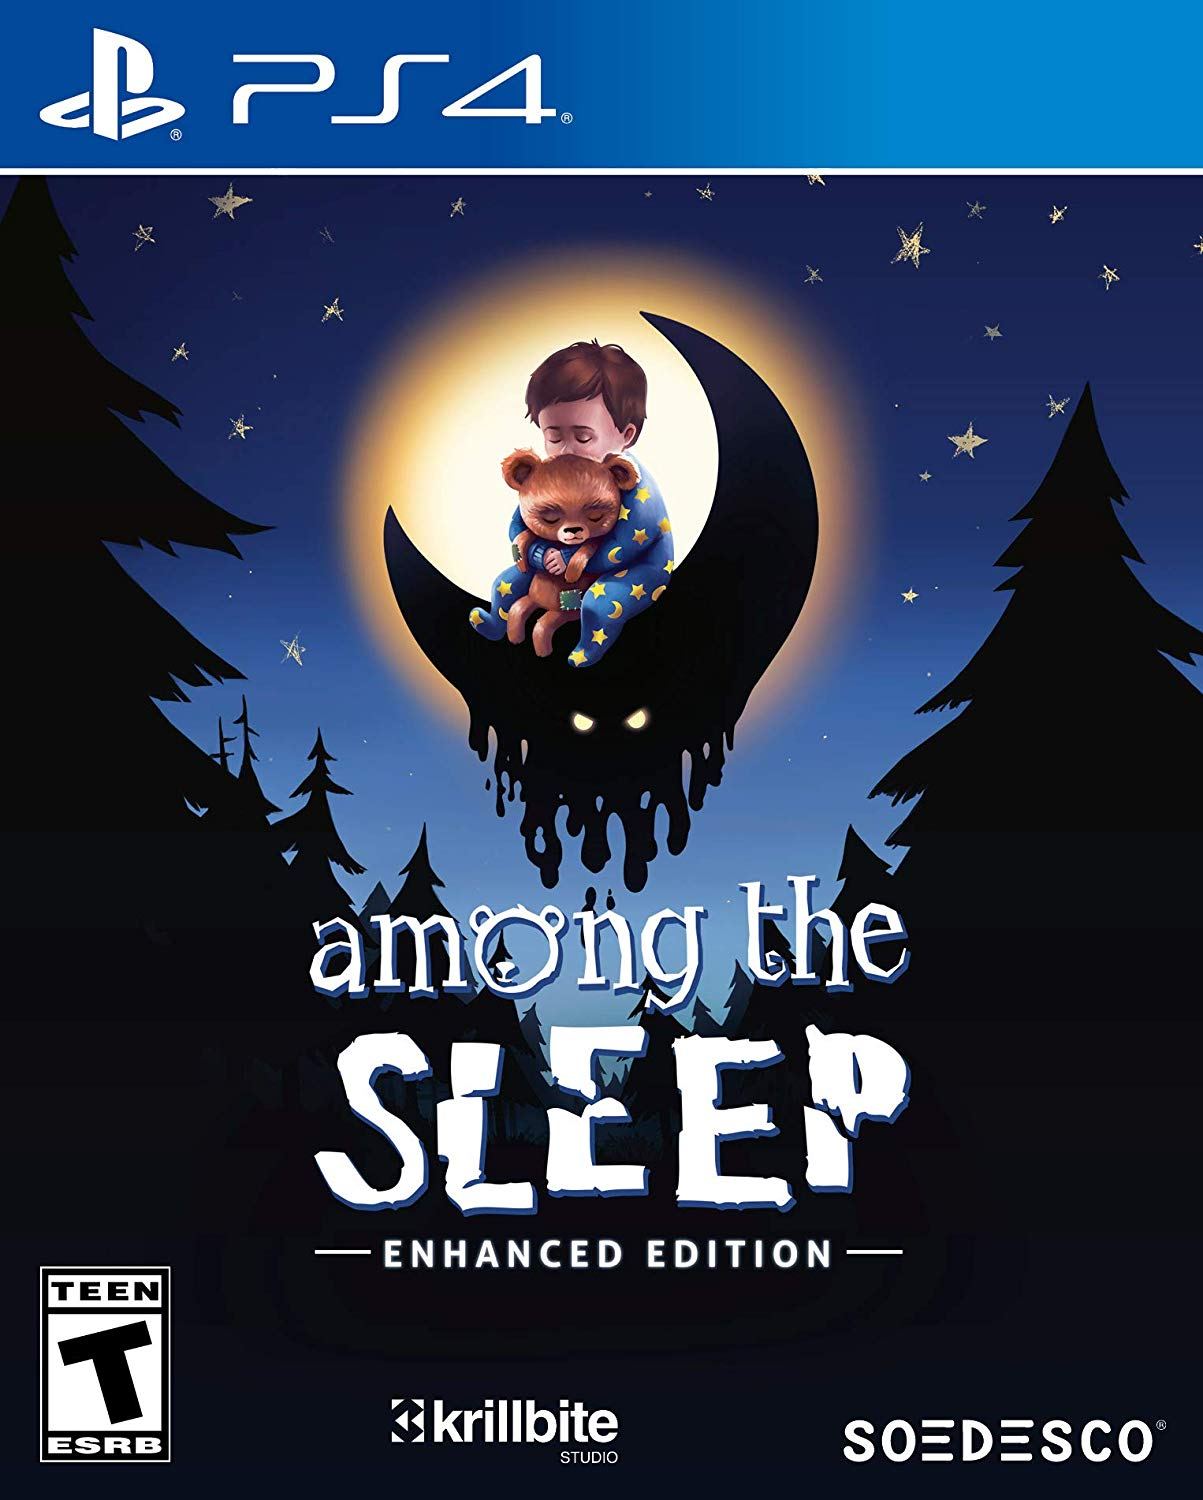 download free among the sleep enhanced edition